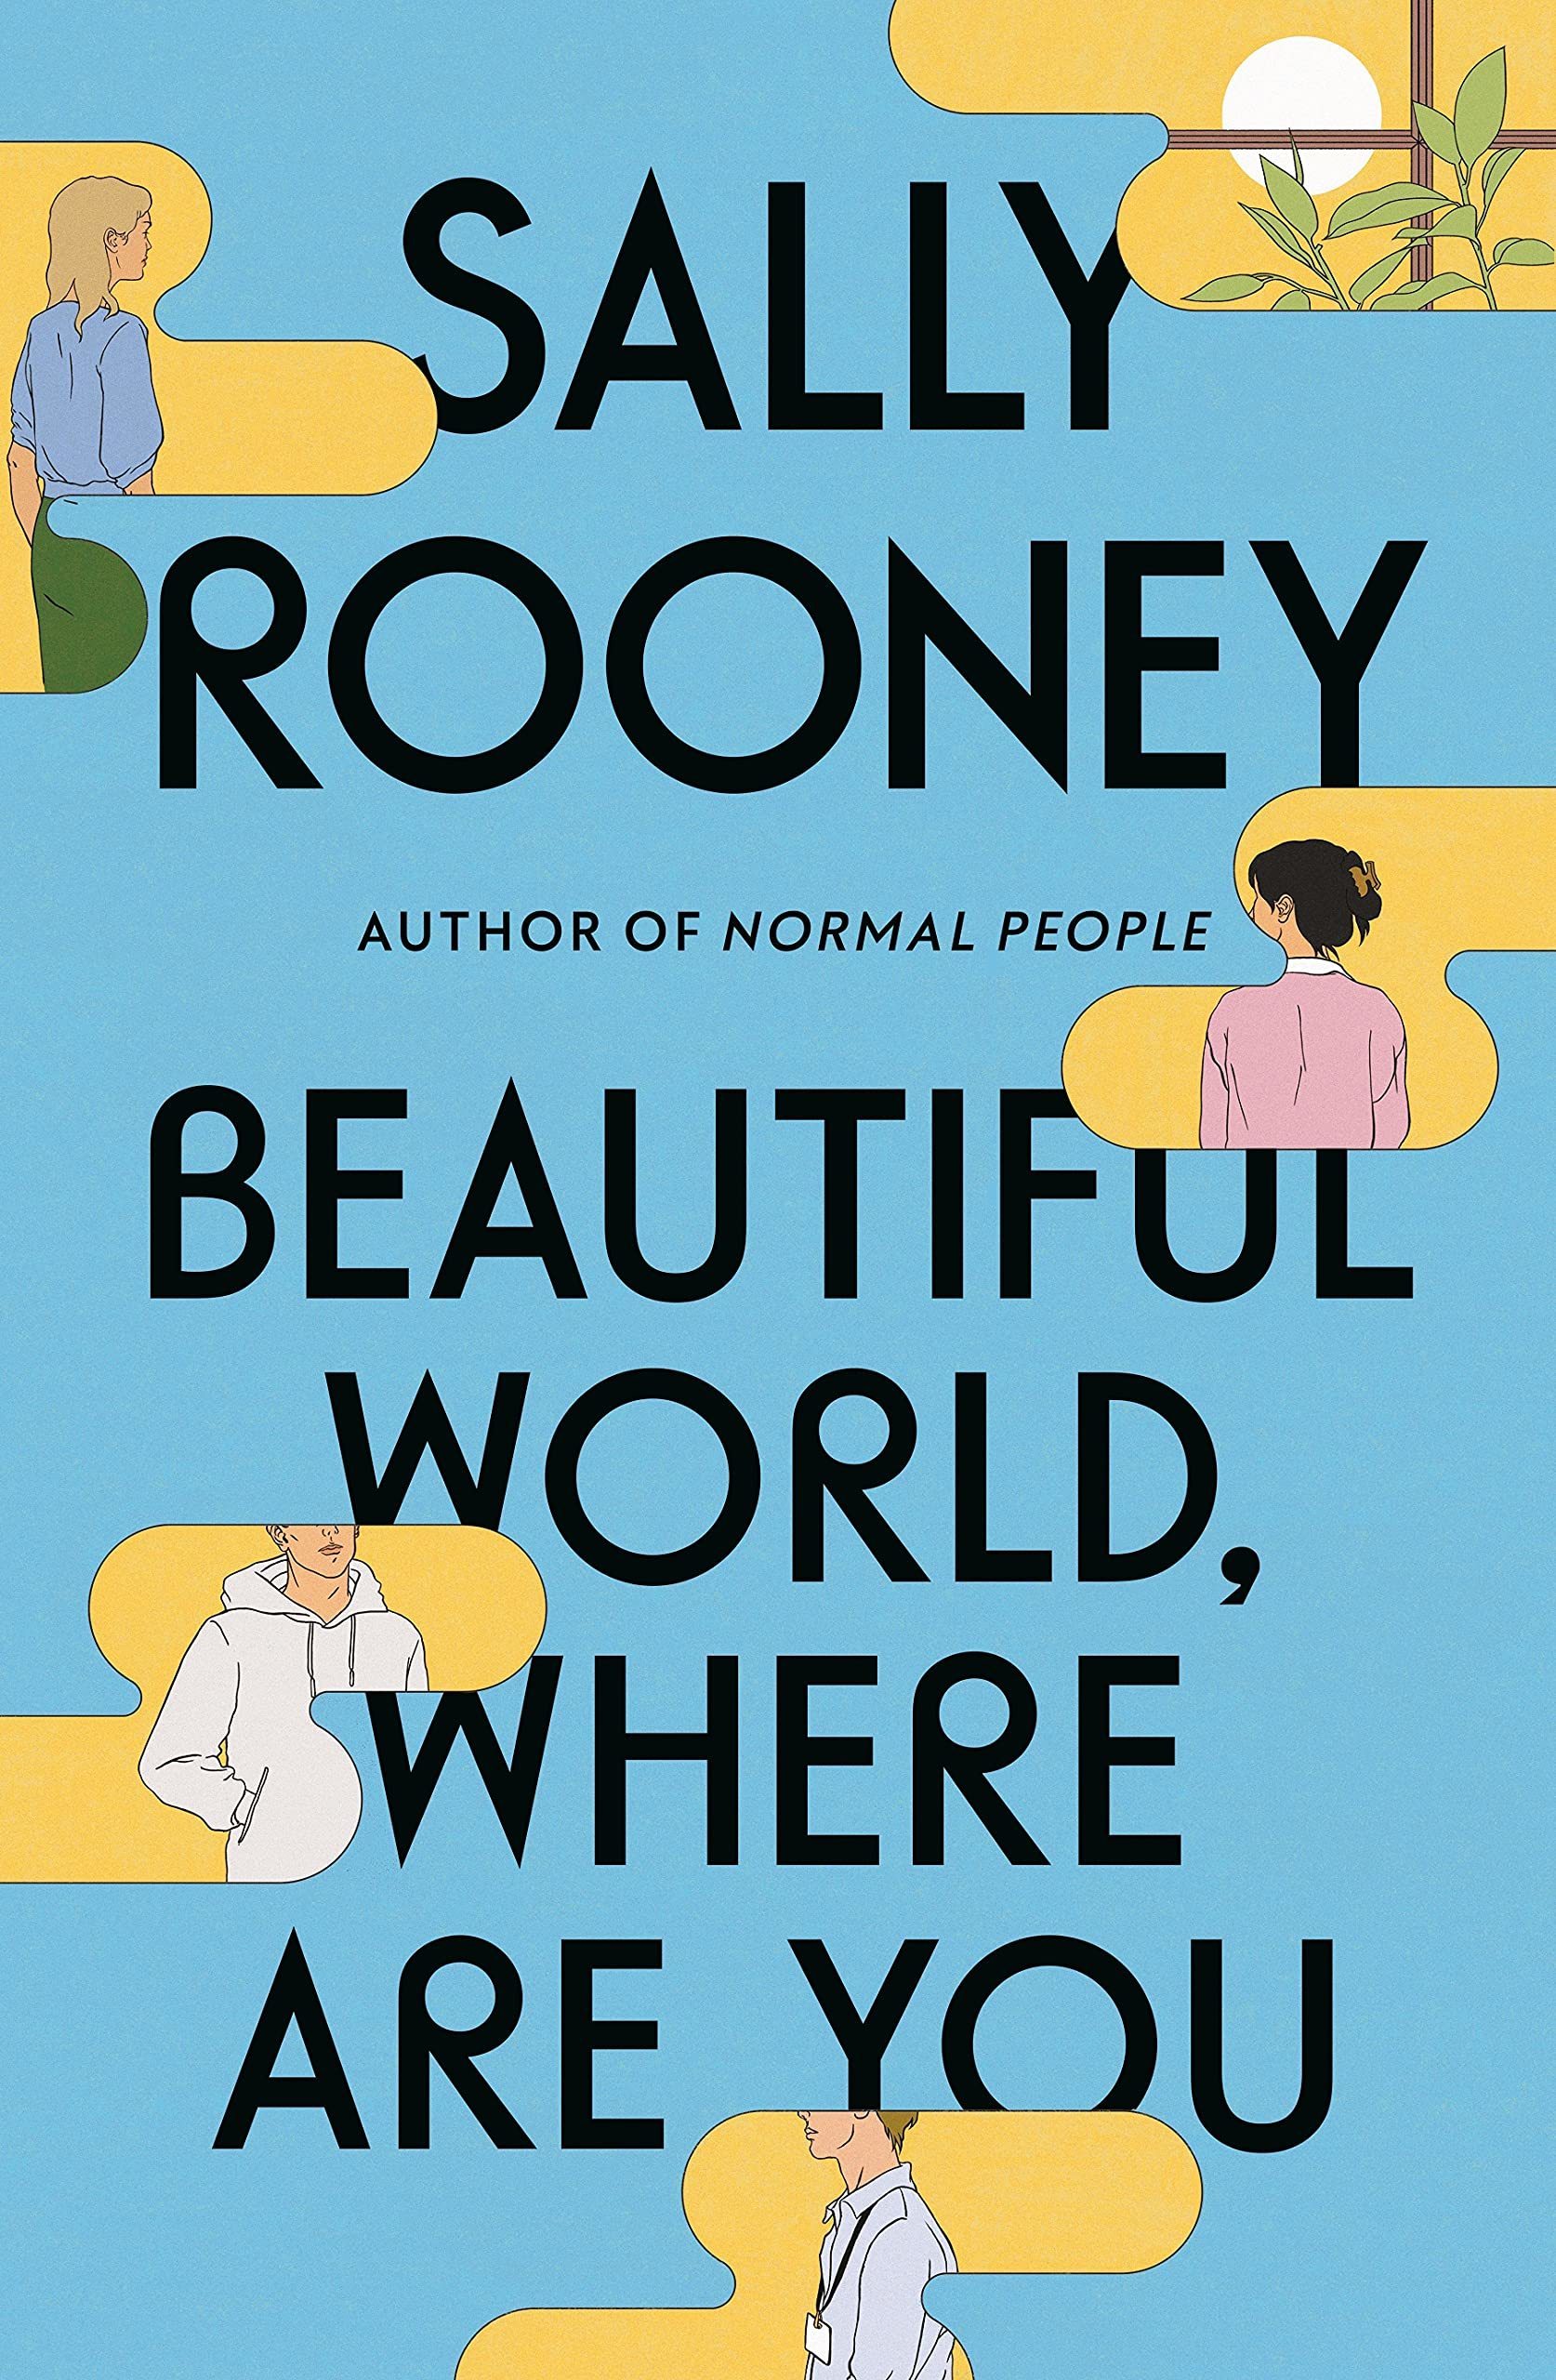 Napsala Sally Ronney nový román o všem a o ničem?